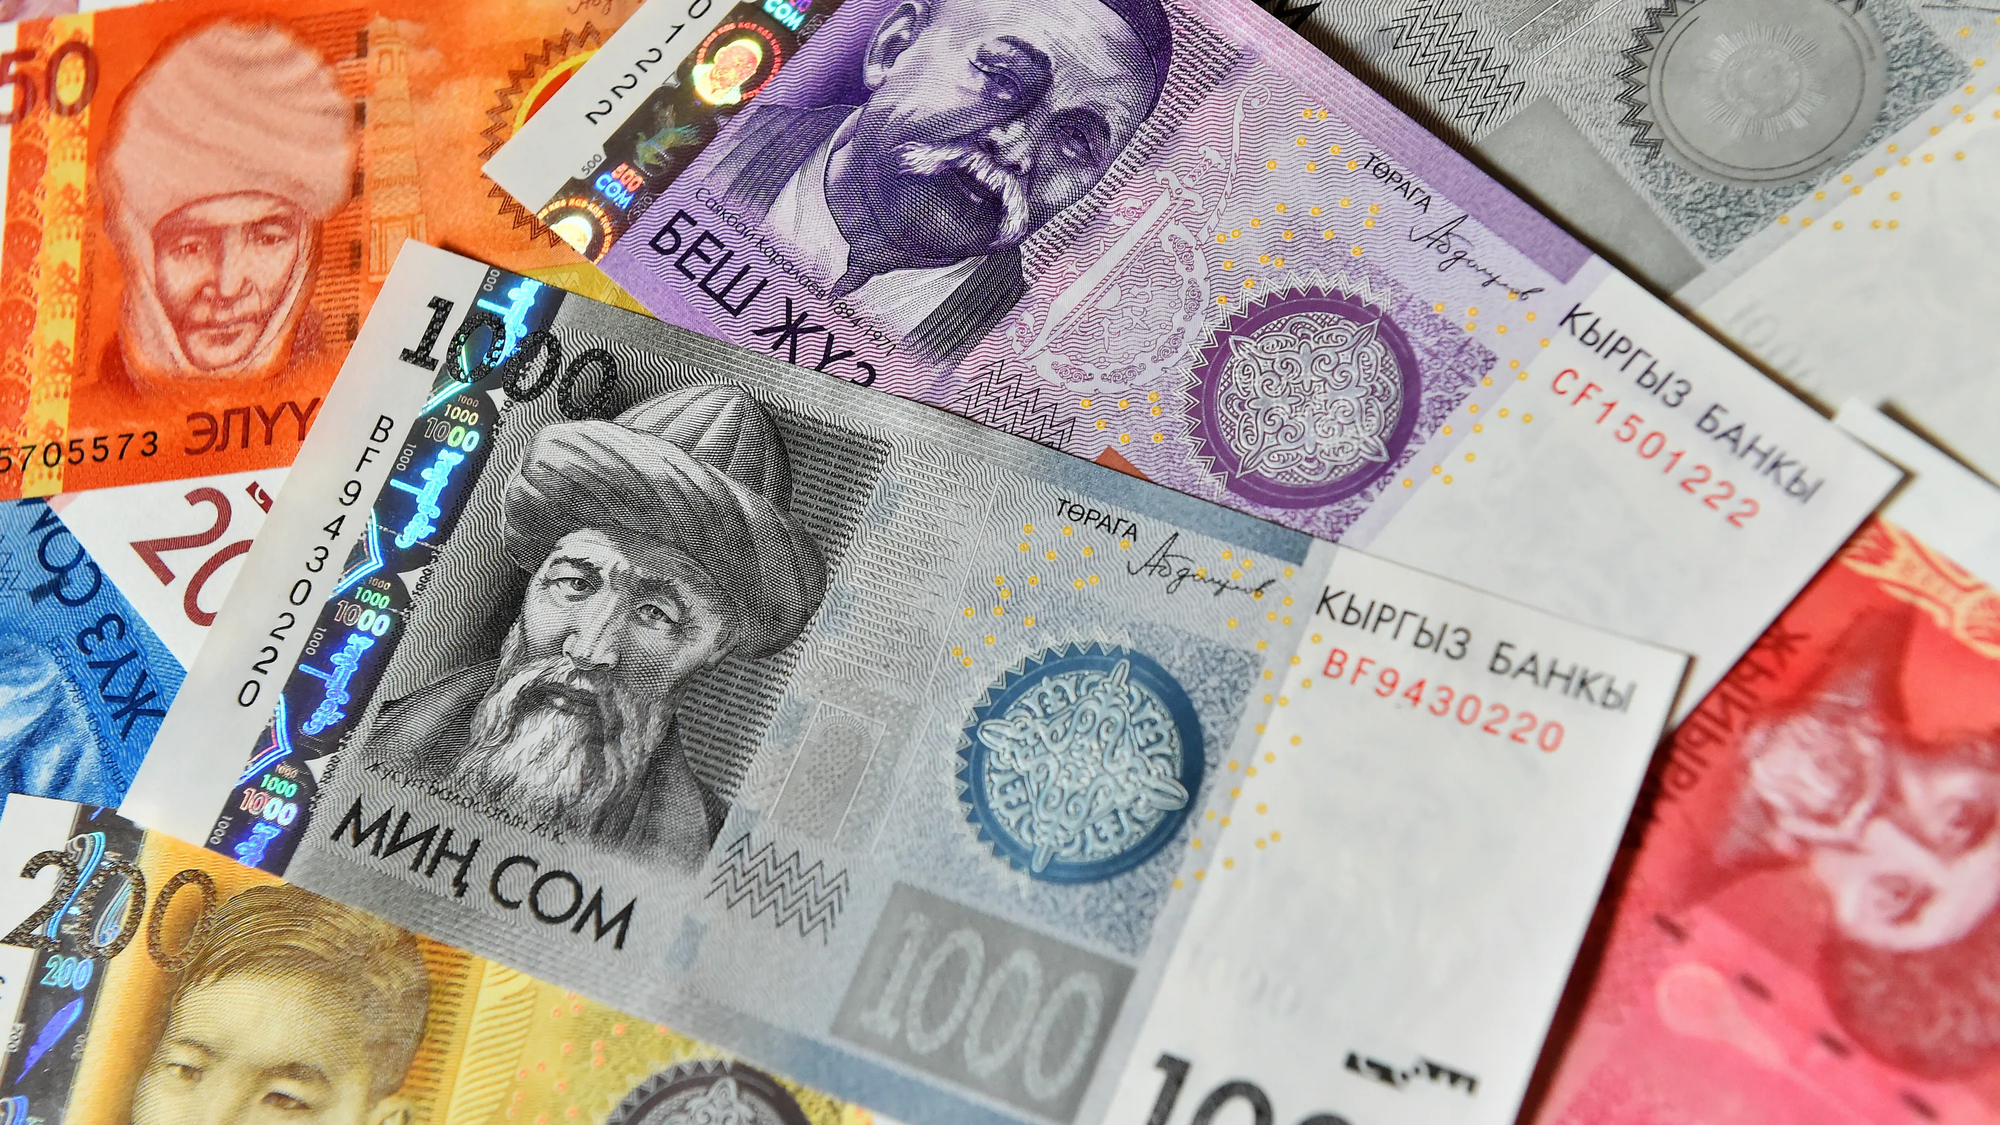 Отказ от доллара: Кыргызстан полностью перейдет на расчеты в сомах